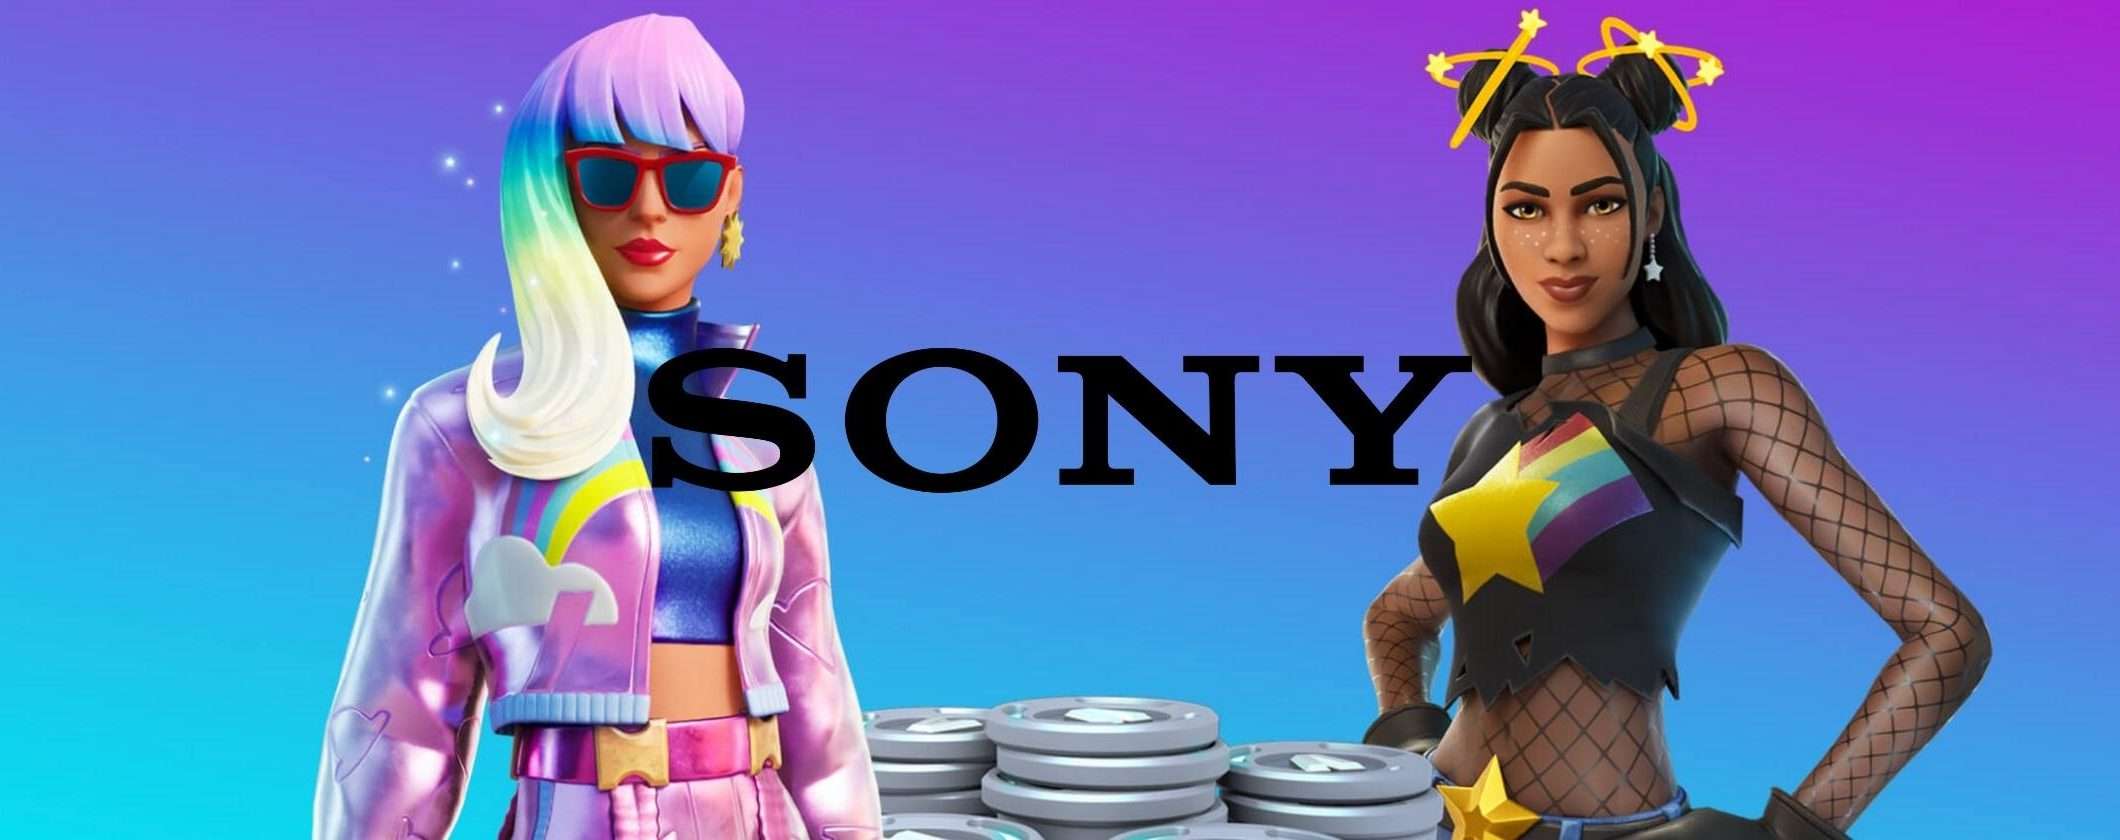 Sony e la rivoluzione del Metaverso: ci sarà anche PlayStation